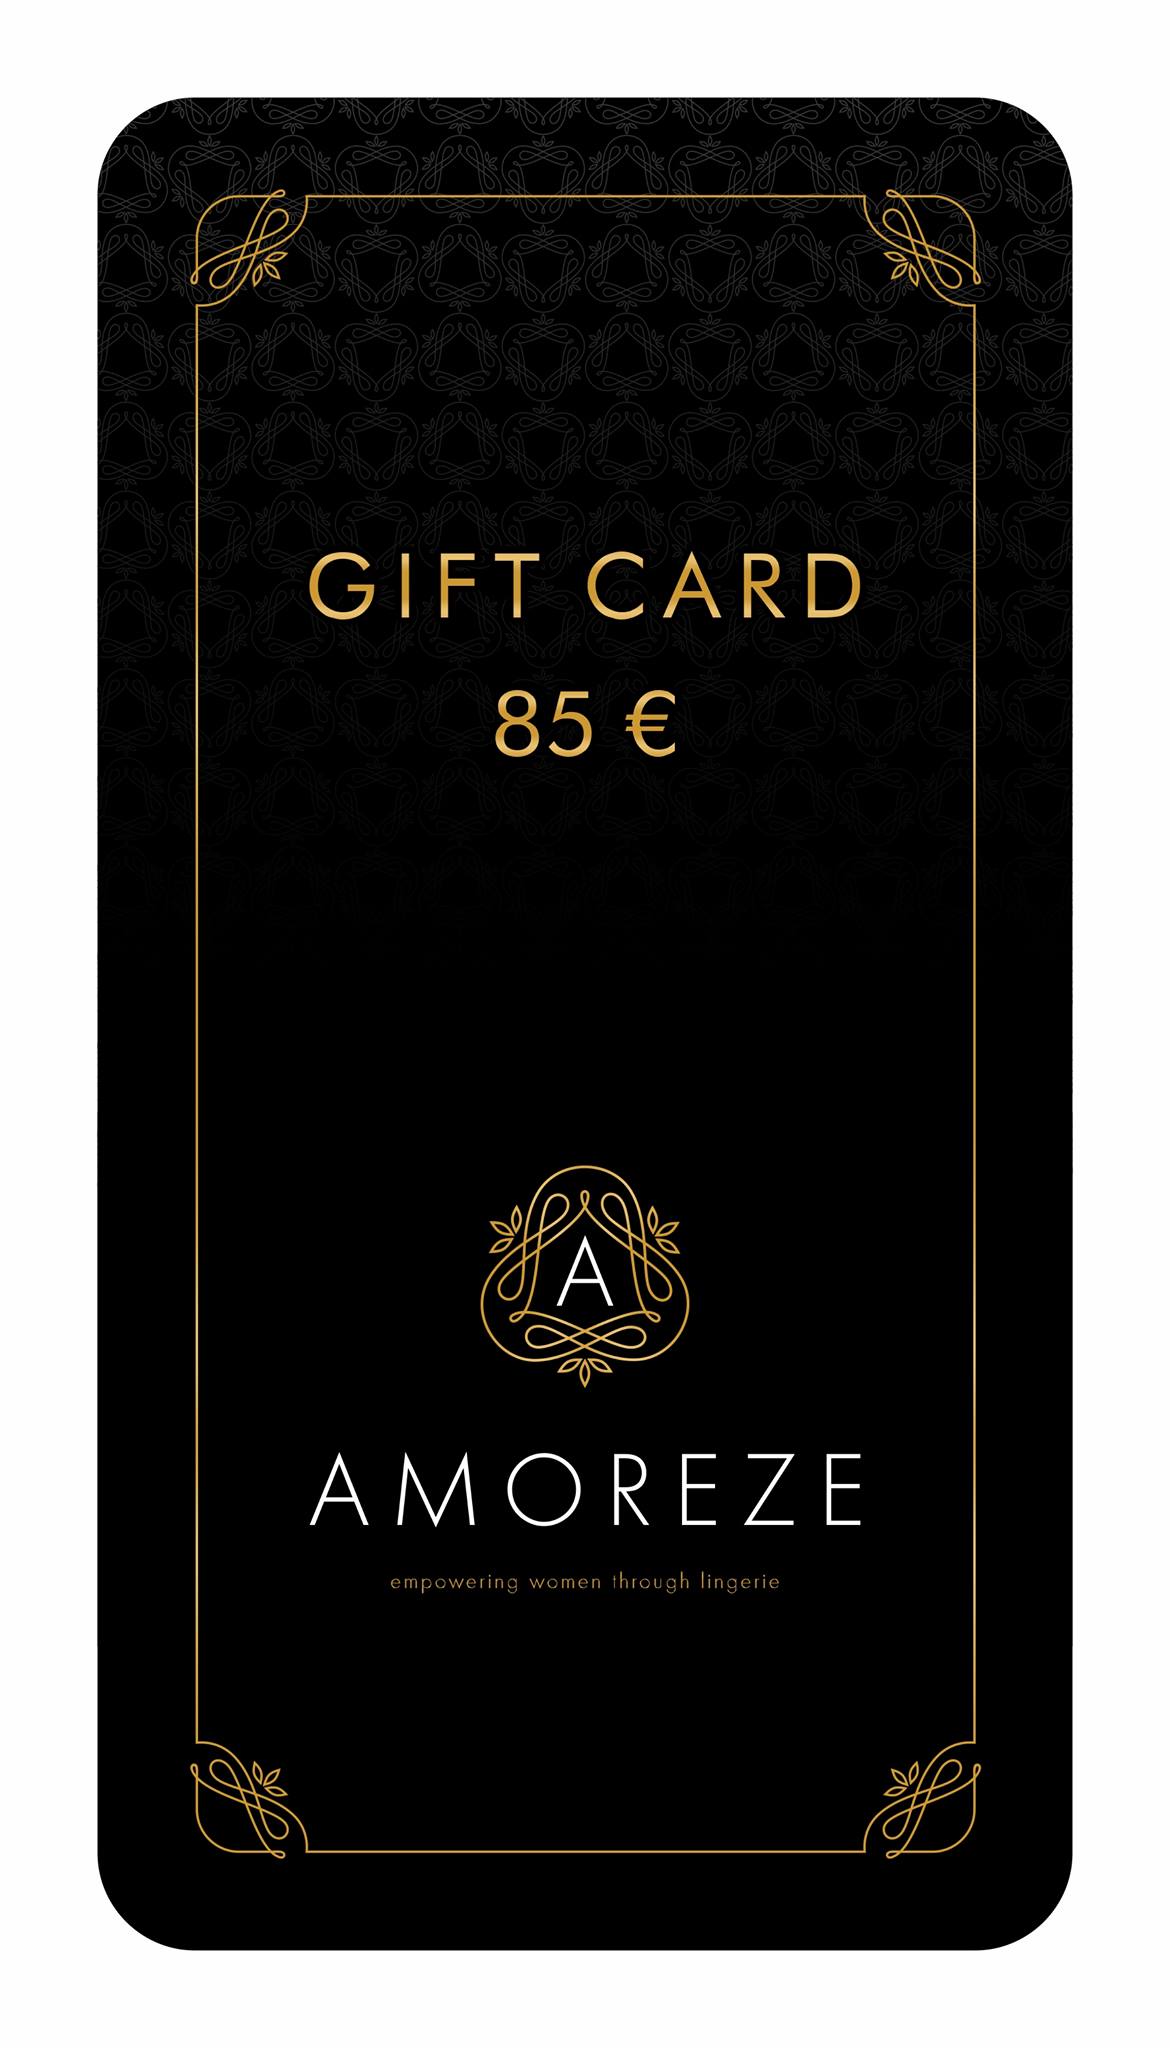 Gift card  - 85 Euro - Amoreze